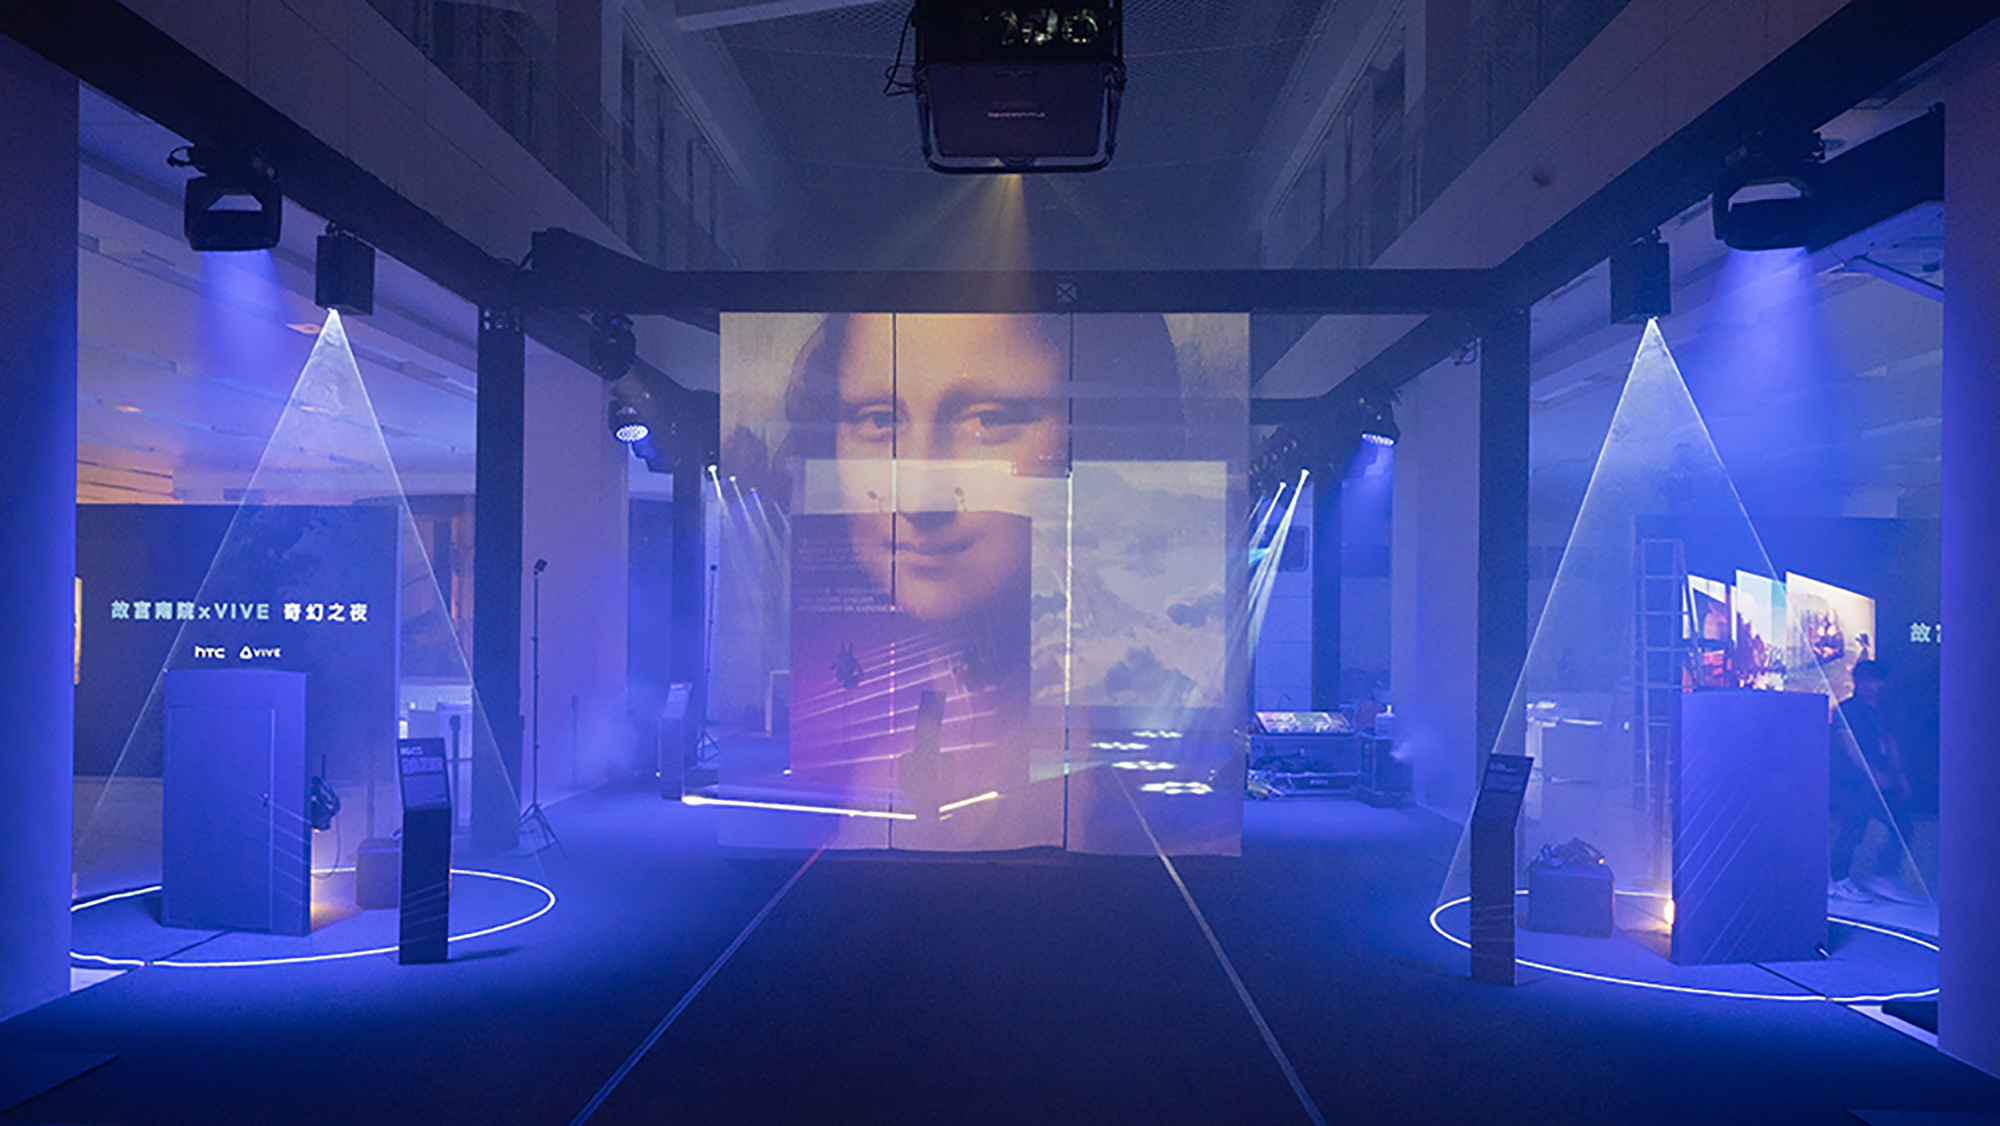 來故宮南院看「奇幻嘉年華」特展，跨世紀飽覽頂尖虛擬實境藝術作品